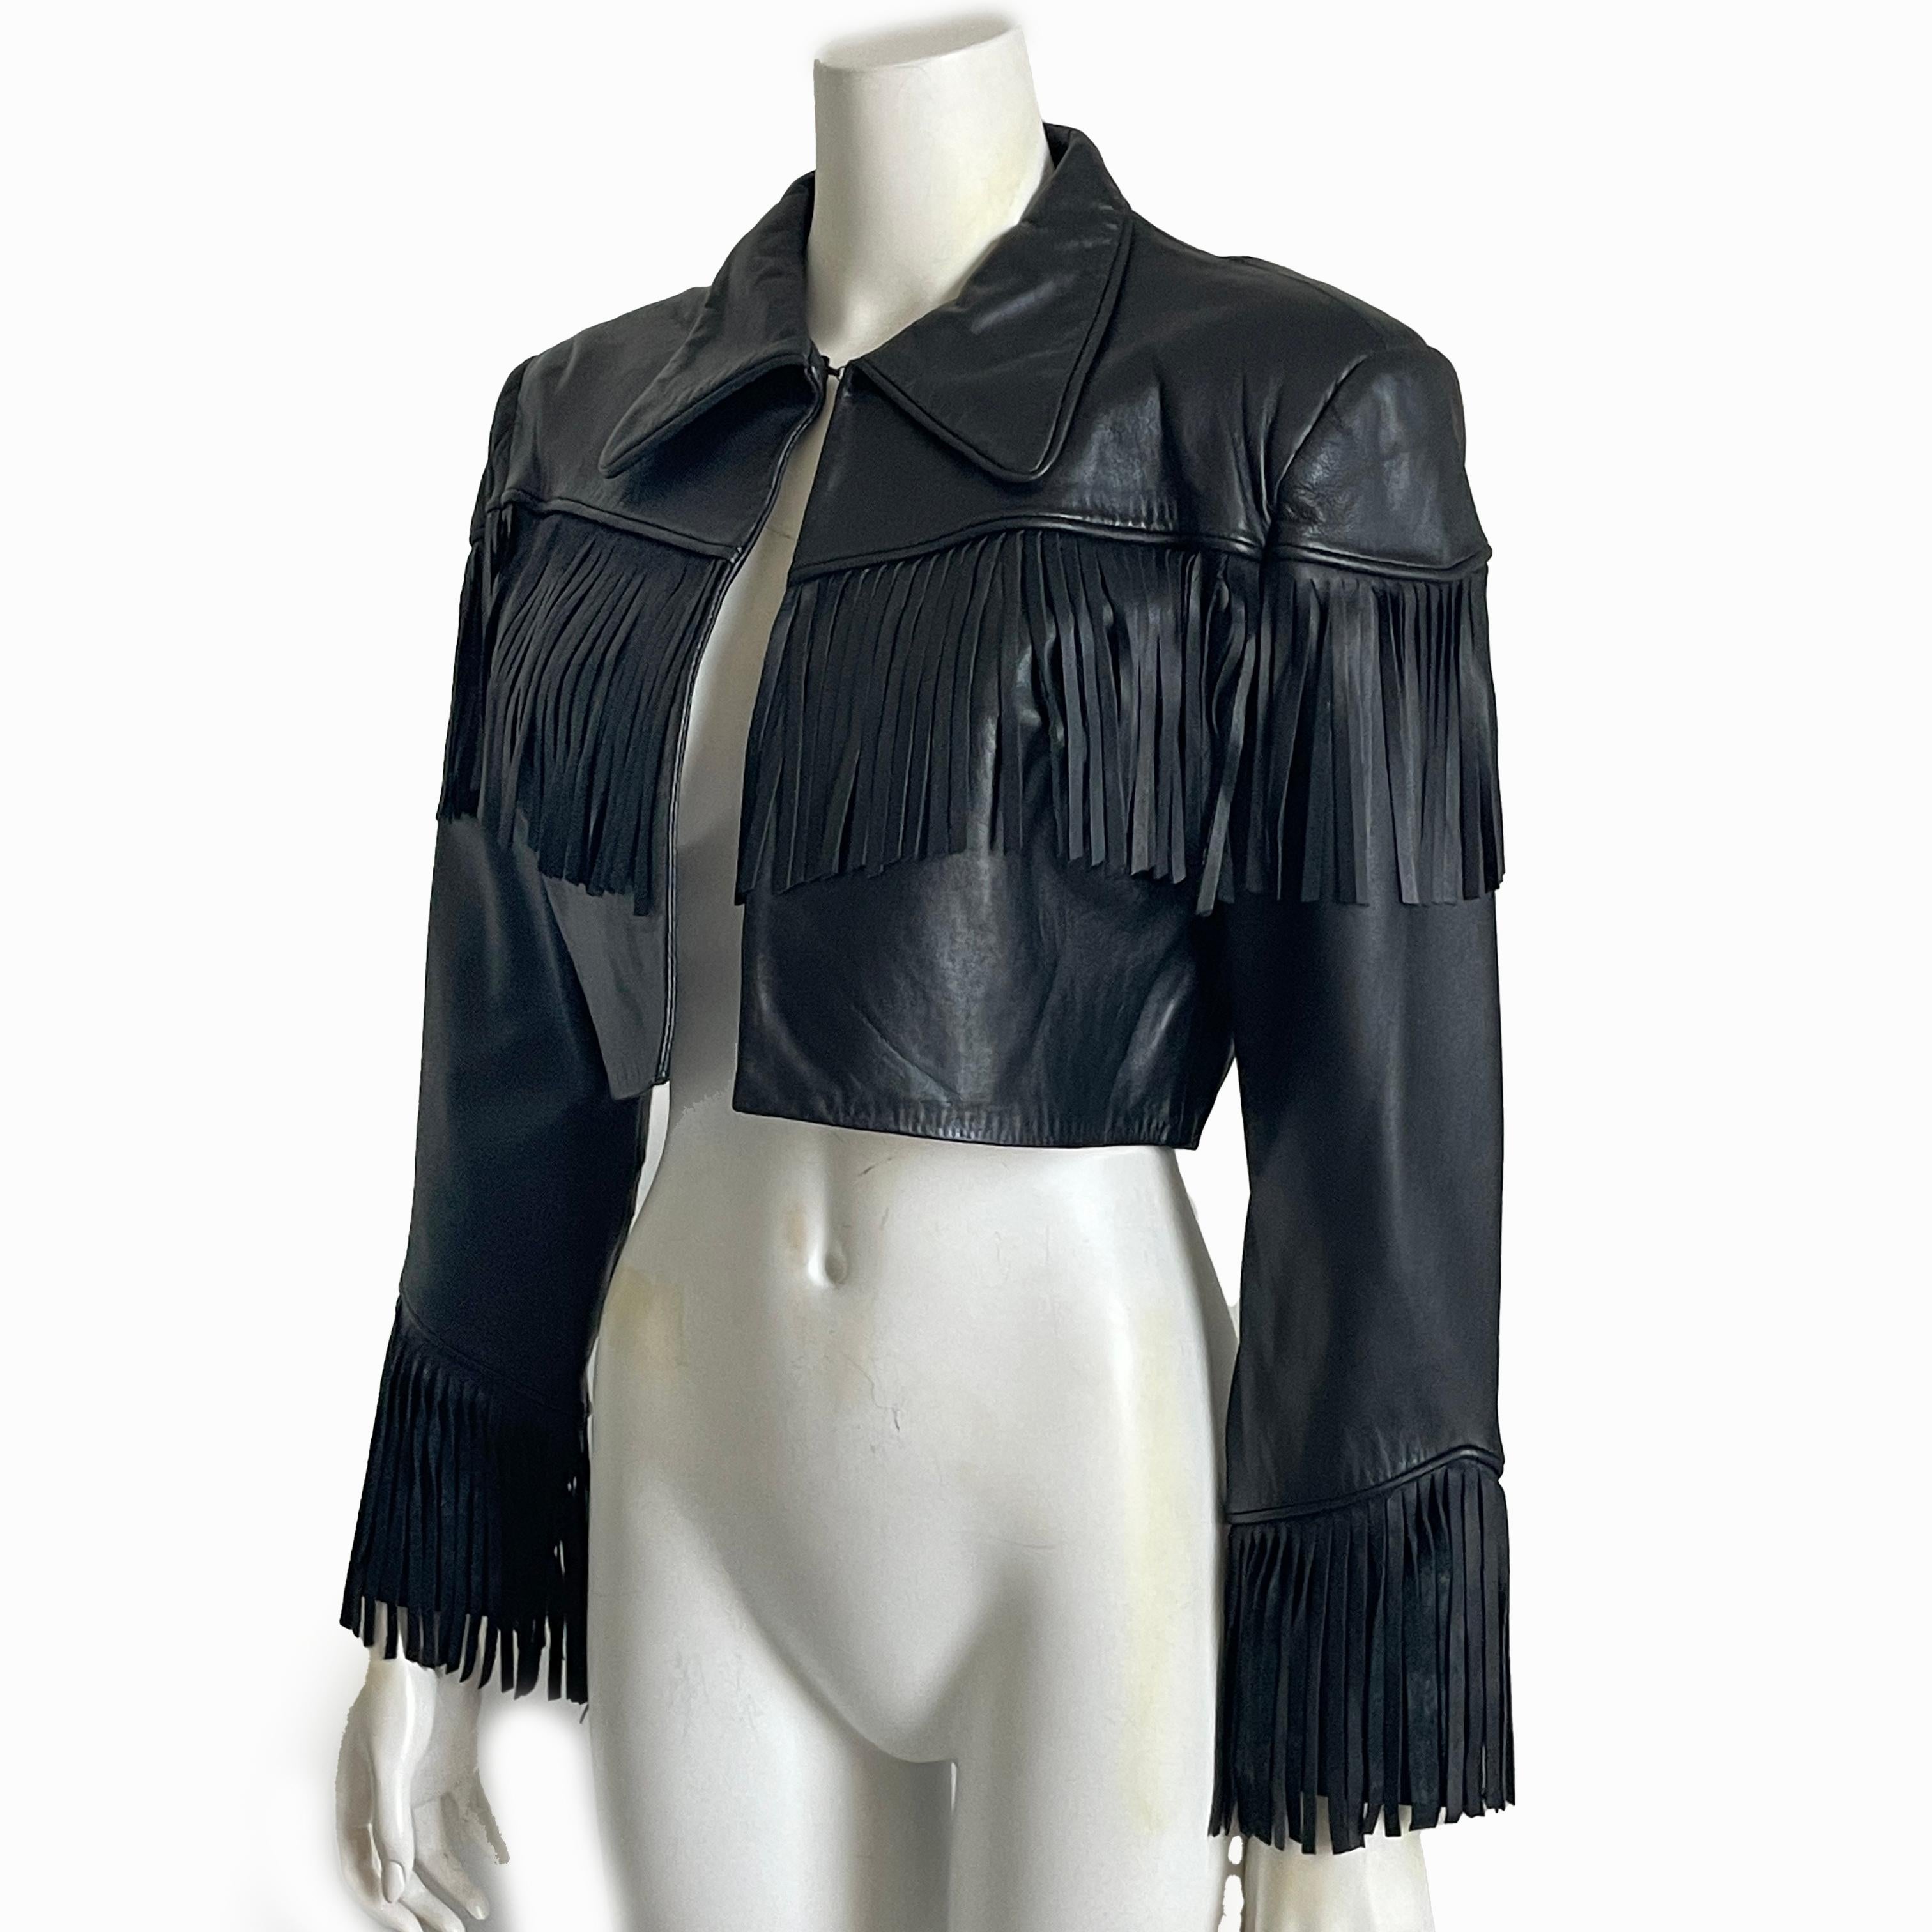 Norma Kamali Leather Jacket Black Cropped Fringe Vintage 1990s Rare Rocker Chic For Sale 6